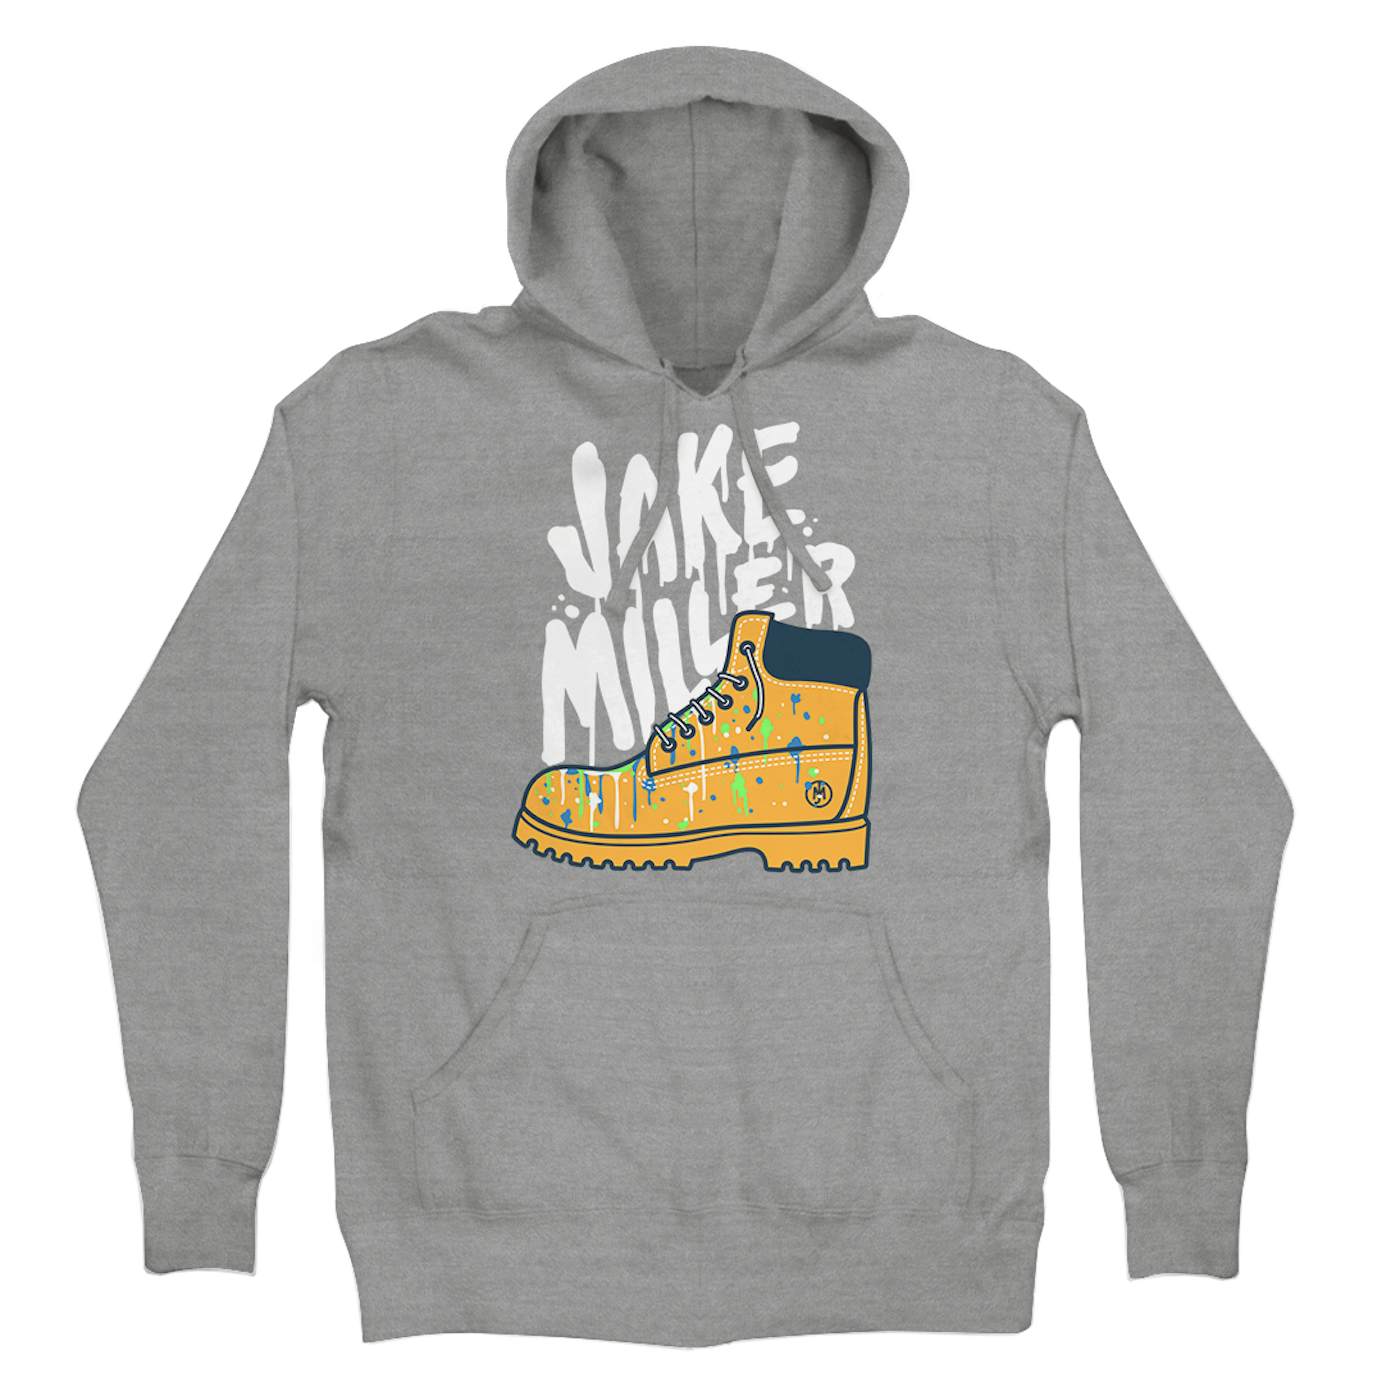 Jake Miller Painted Tims hoodie